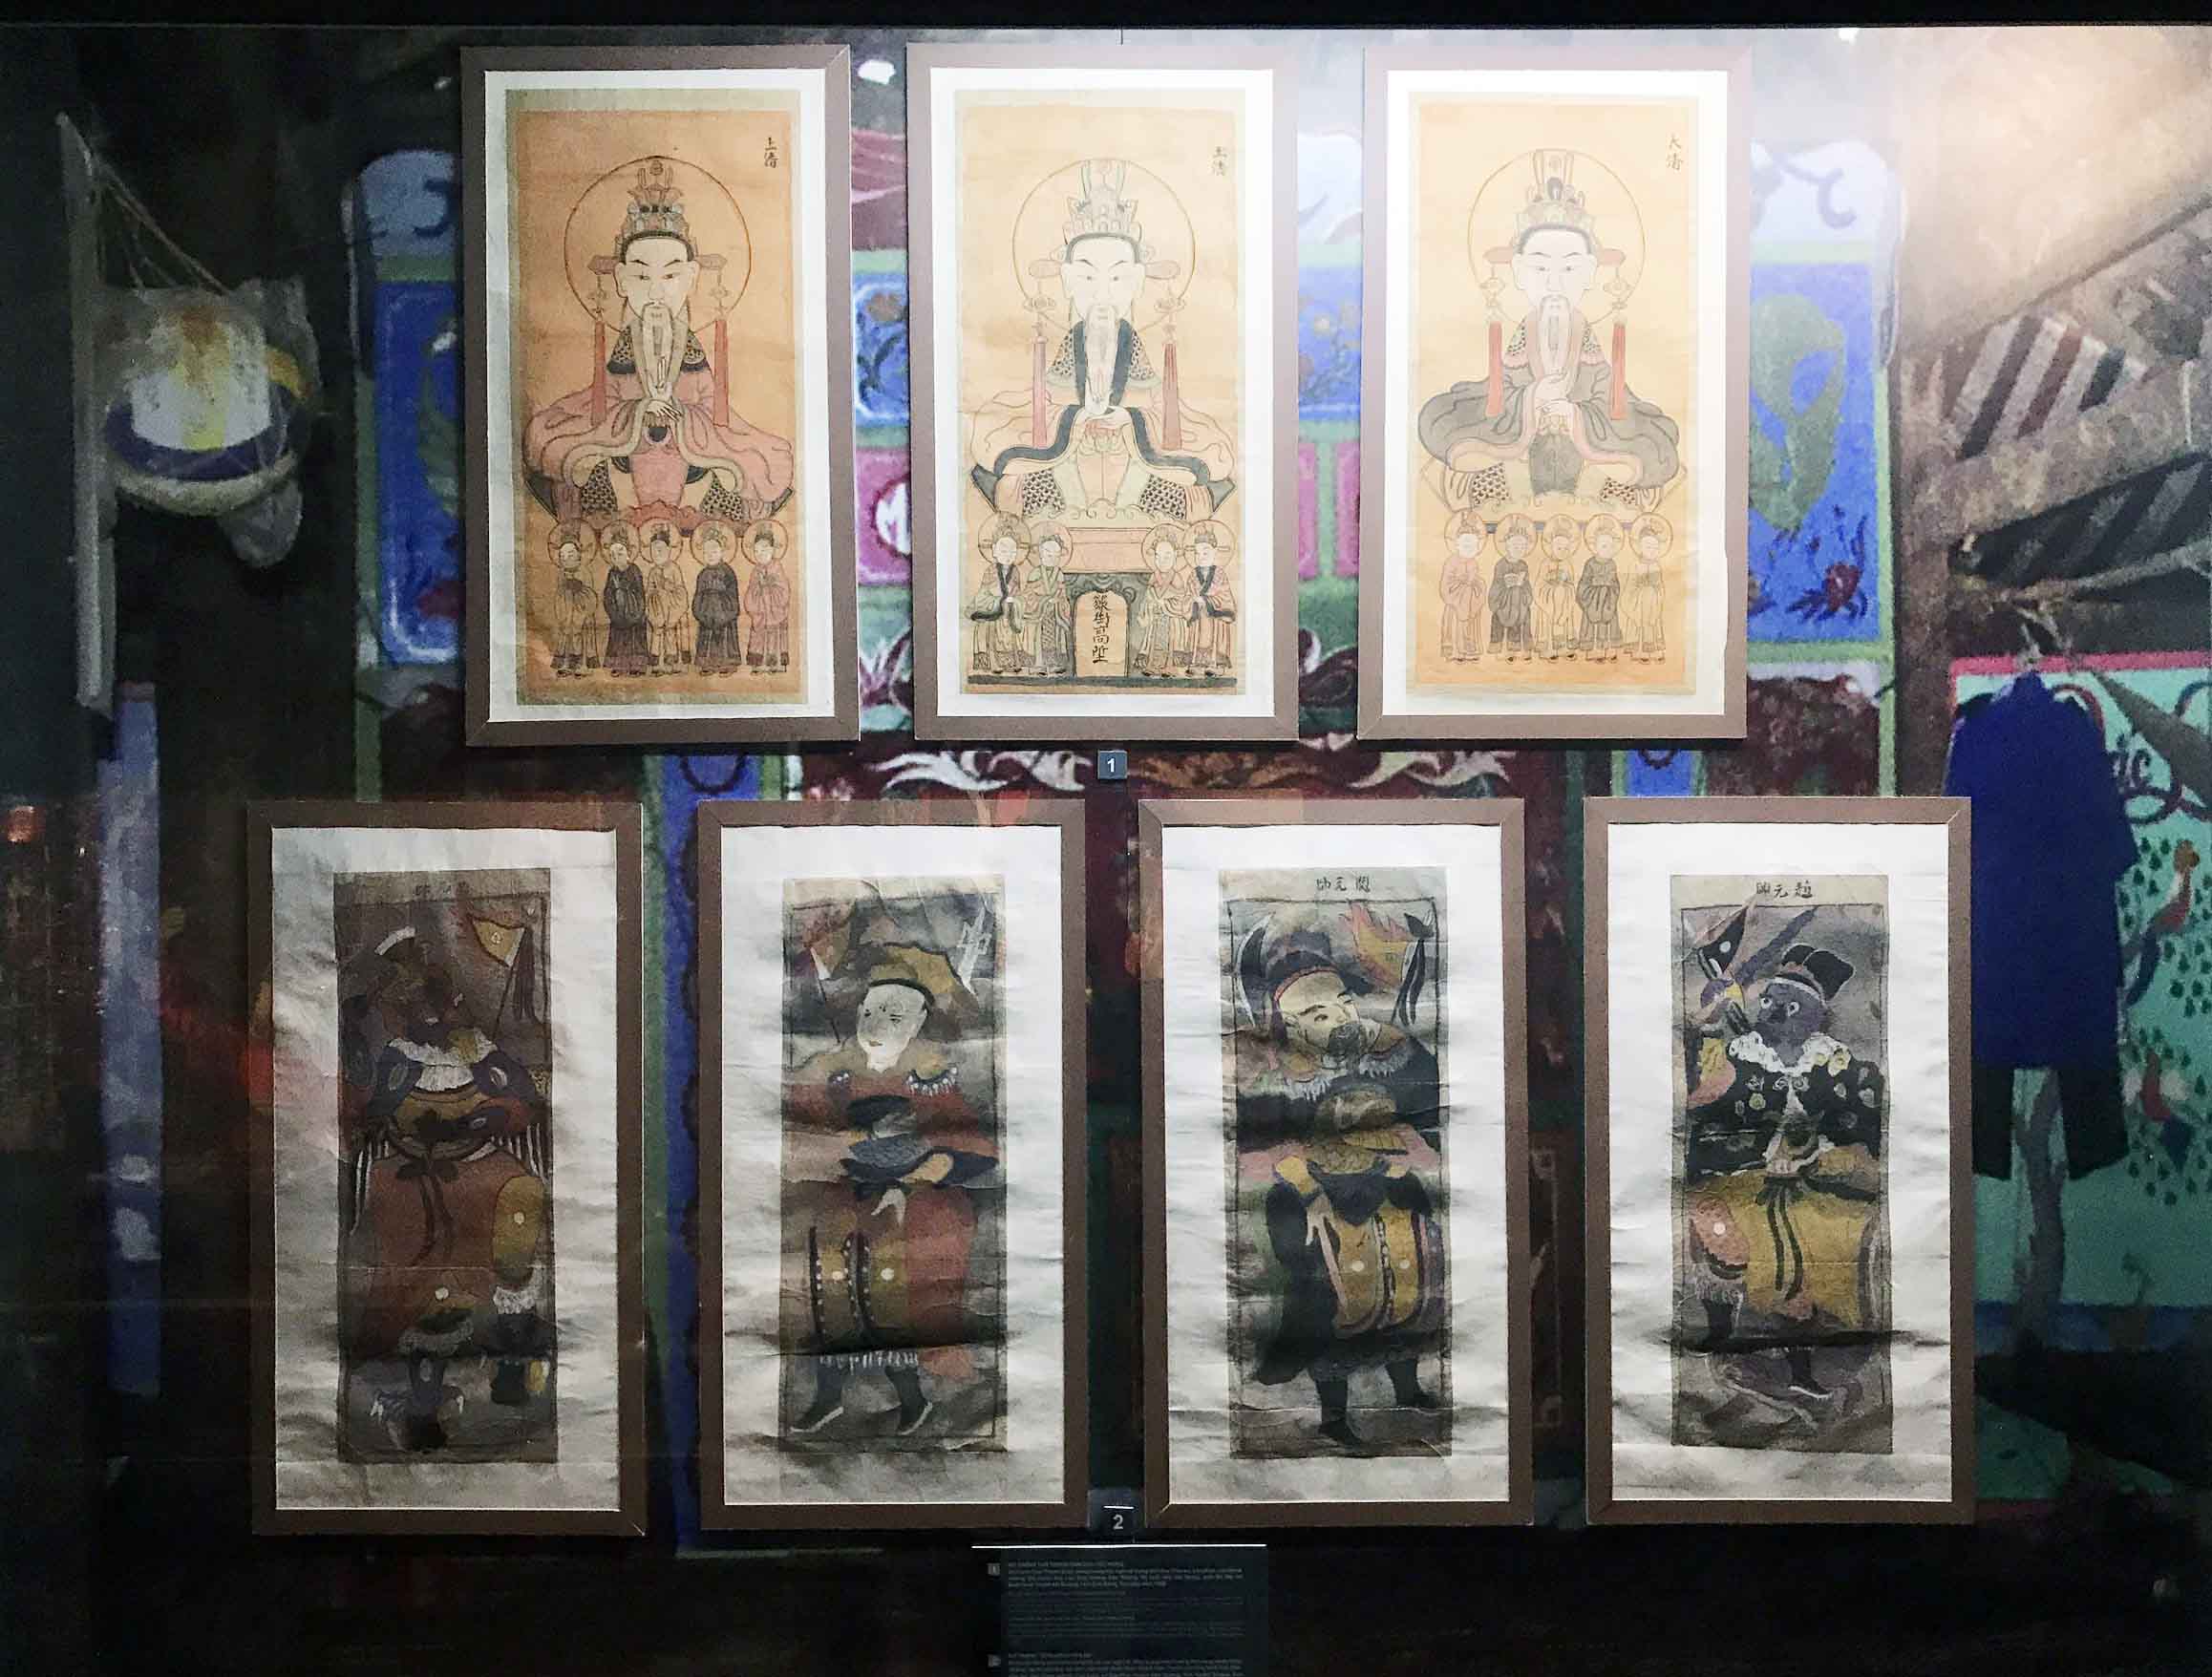 Bộ tranh “Tam Thanh” dân tộc Nùng và bộ tranh “Tứ Đại Nguyên Sư” dân tộc Sán Chay, trưng bày tại Bảo tàng Văn hoá các dân tộc Việt Nam